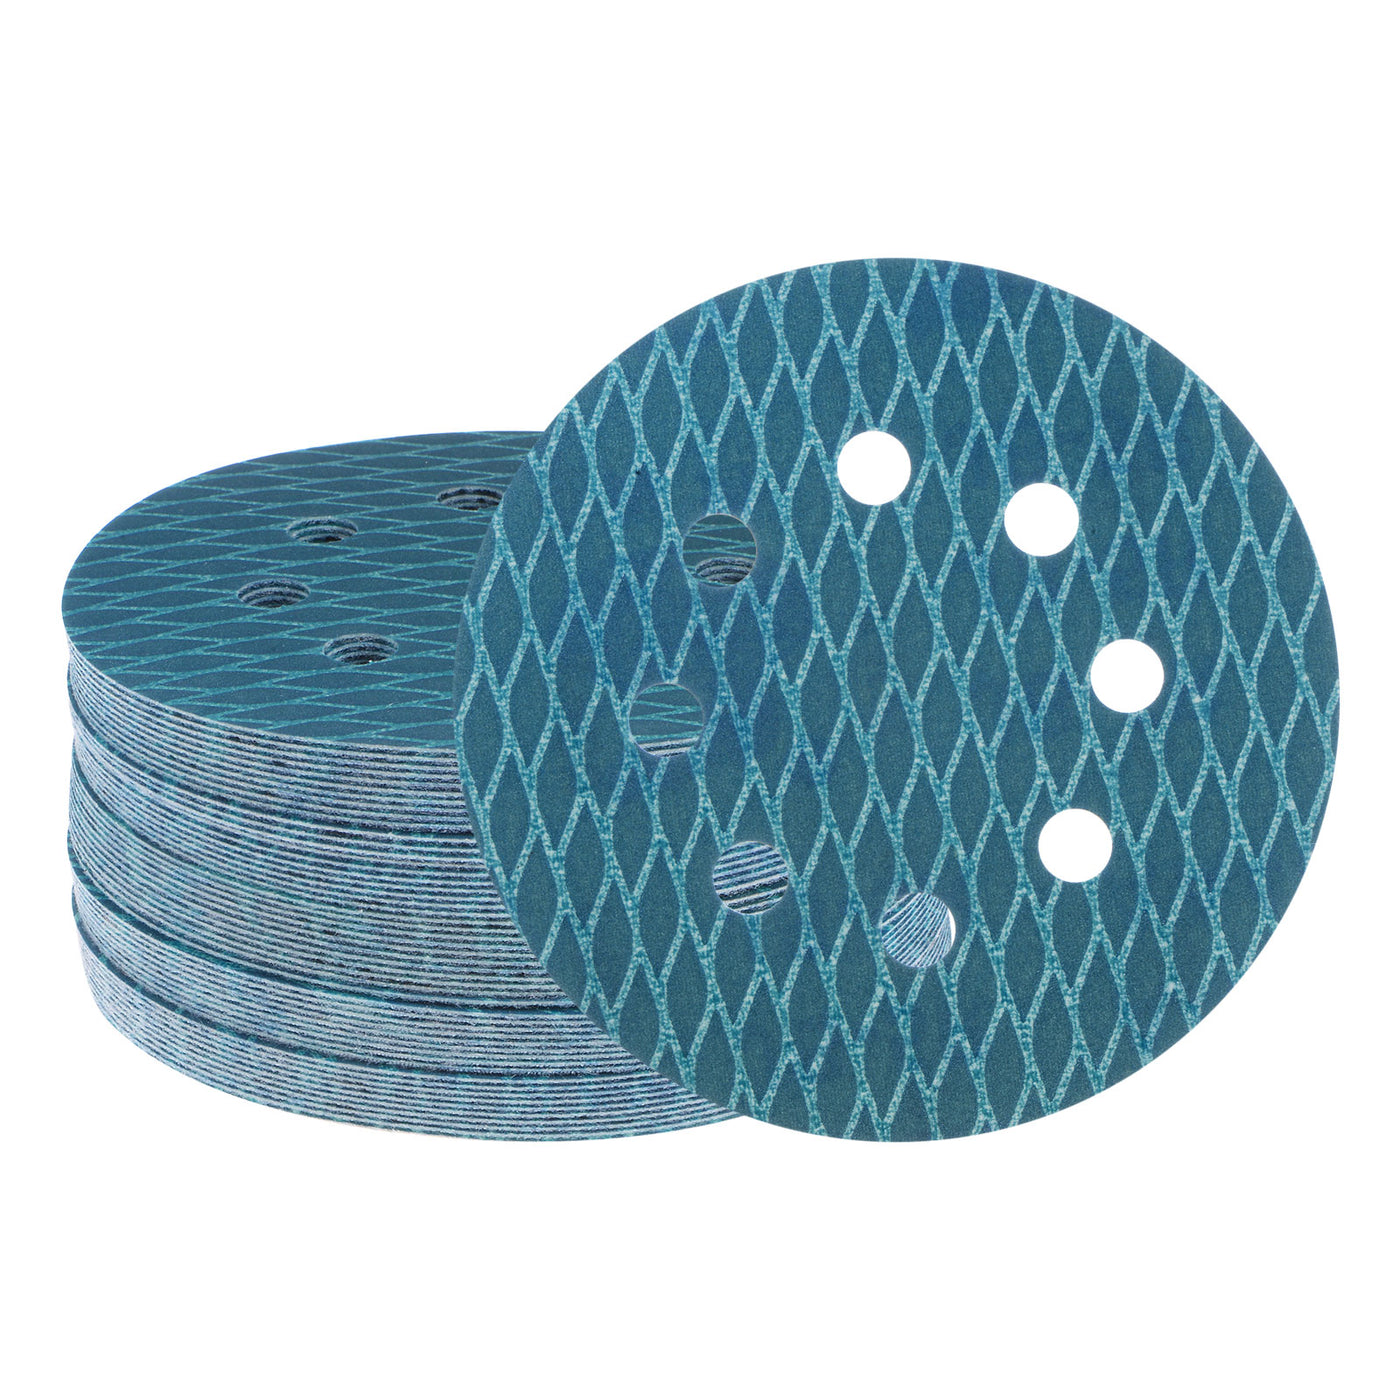 Harfington 50pcs Diamond Shape Sanding Discs 5" 400 Grit Hook & Loop Rhomb Sandpaper 8 Hole